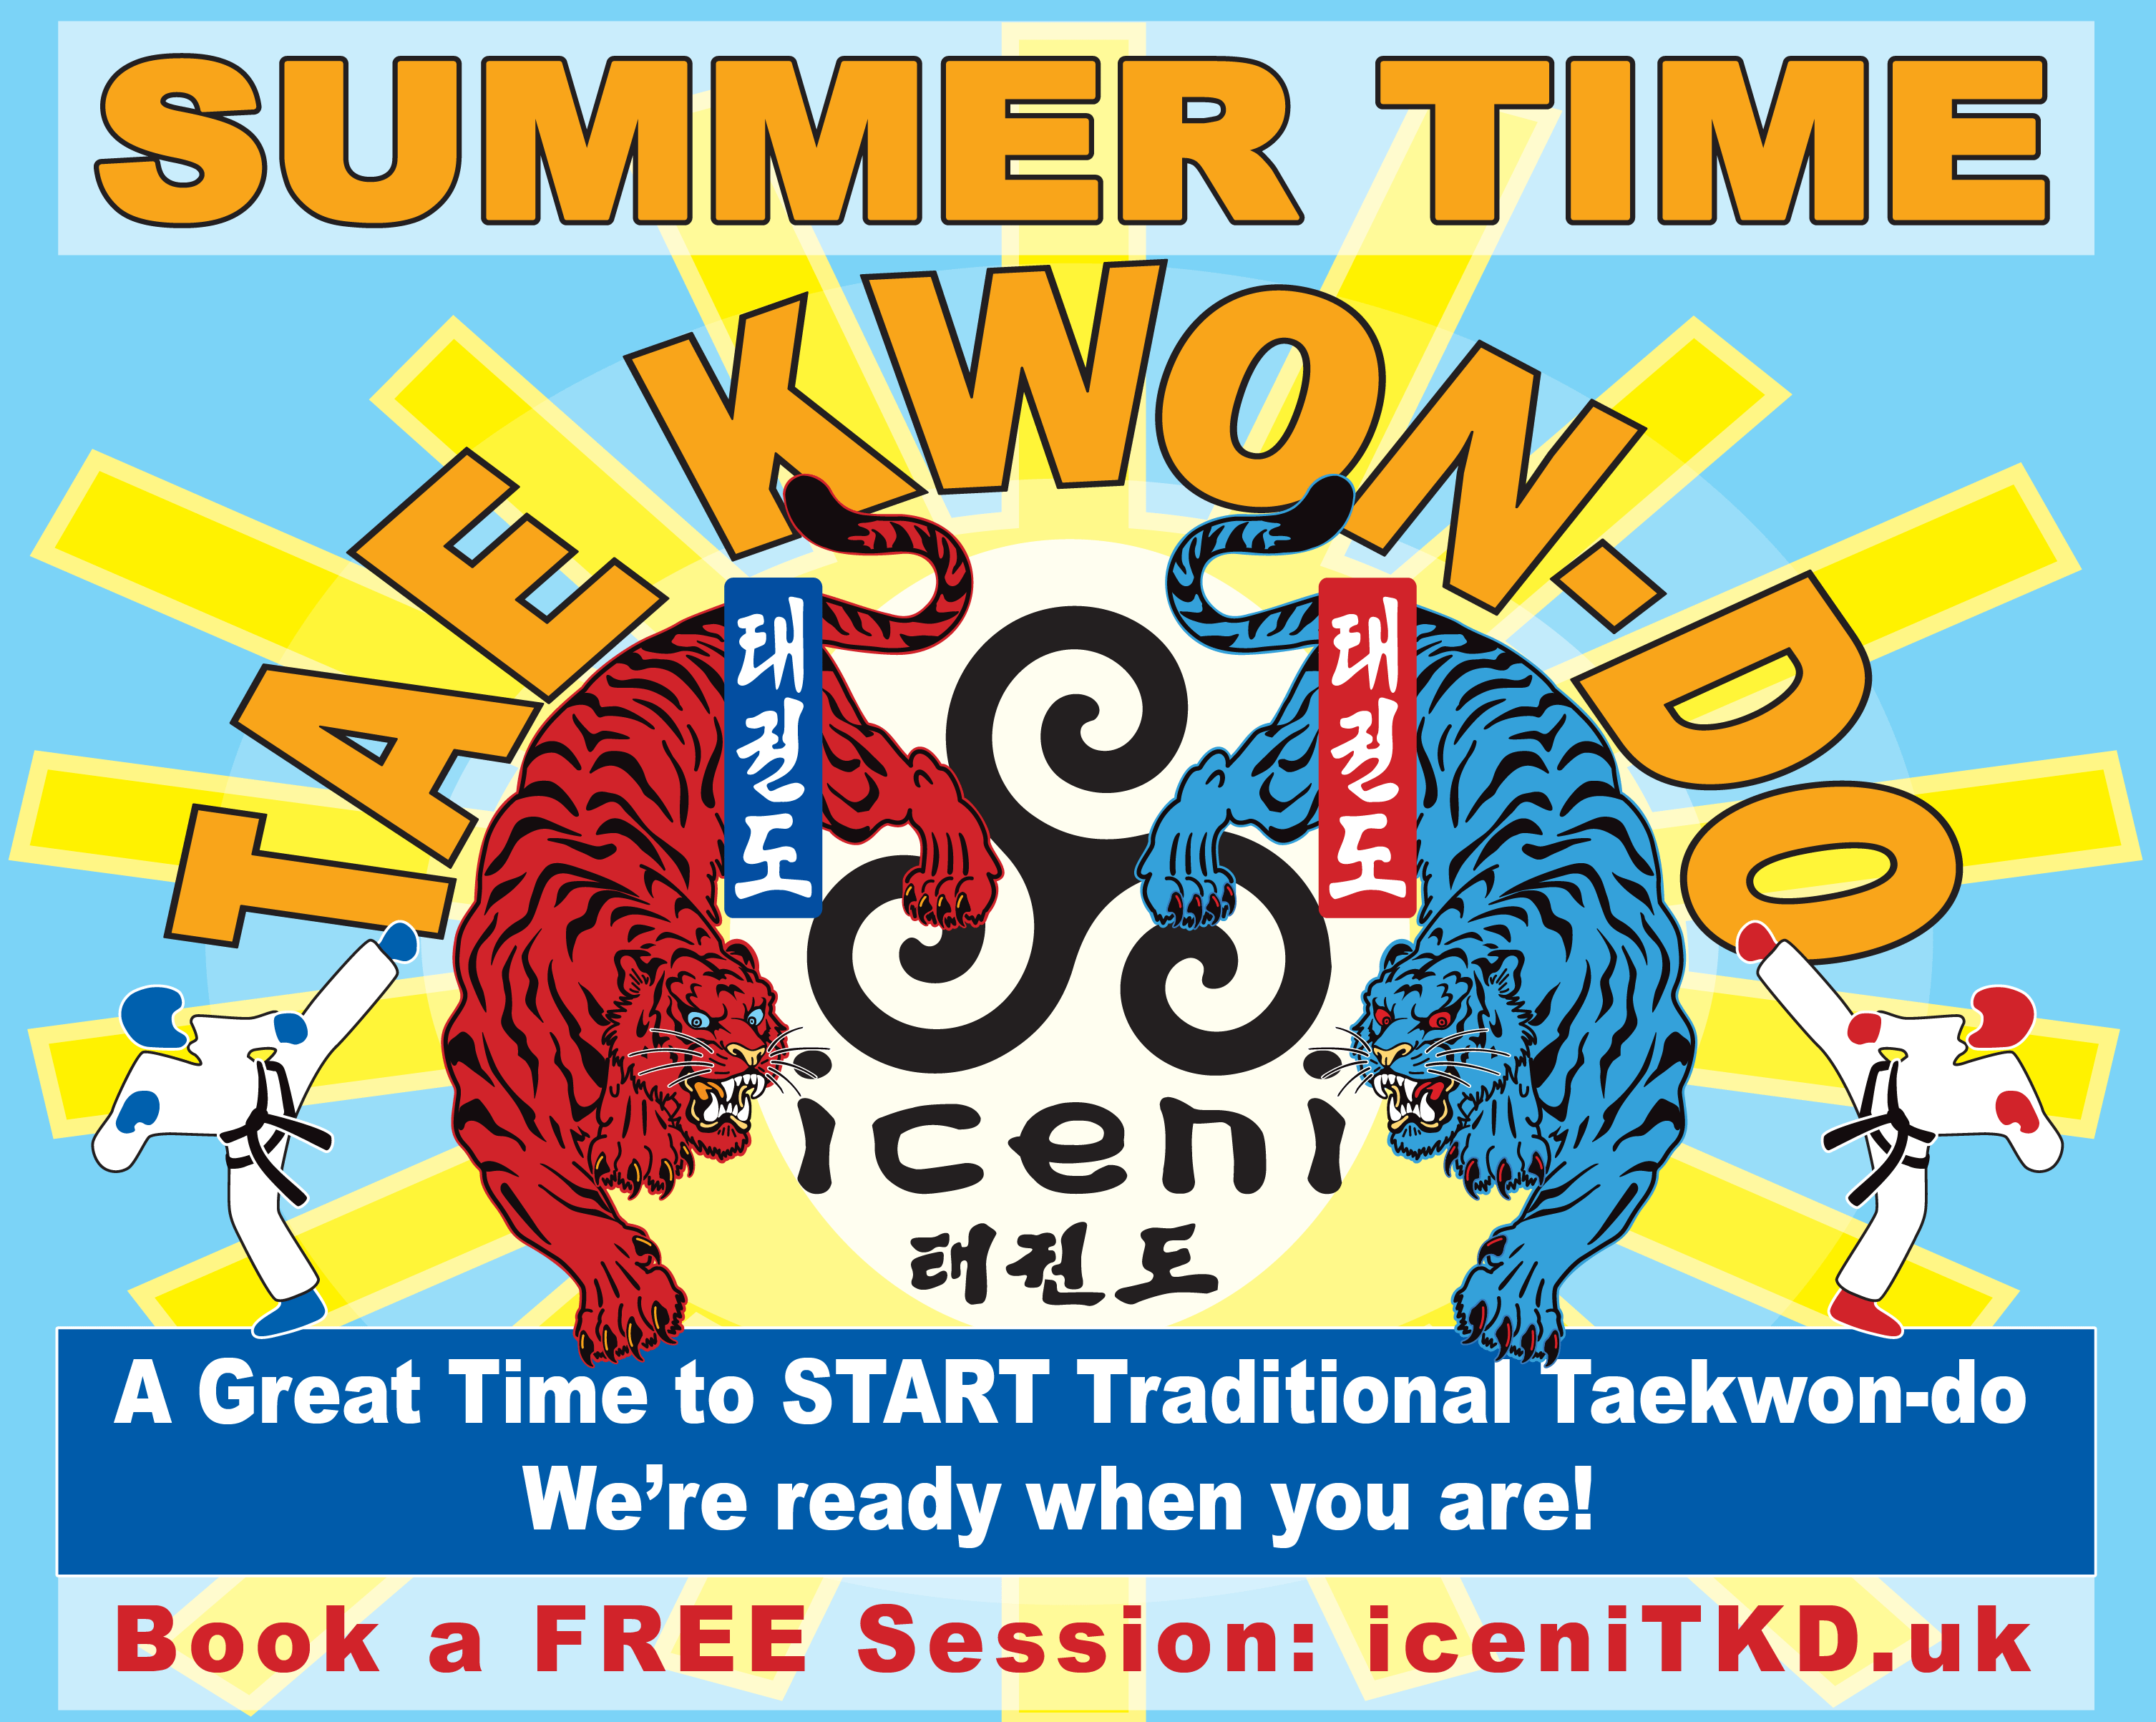 START Traditional Taekwon-do Training